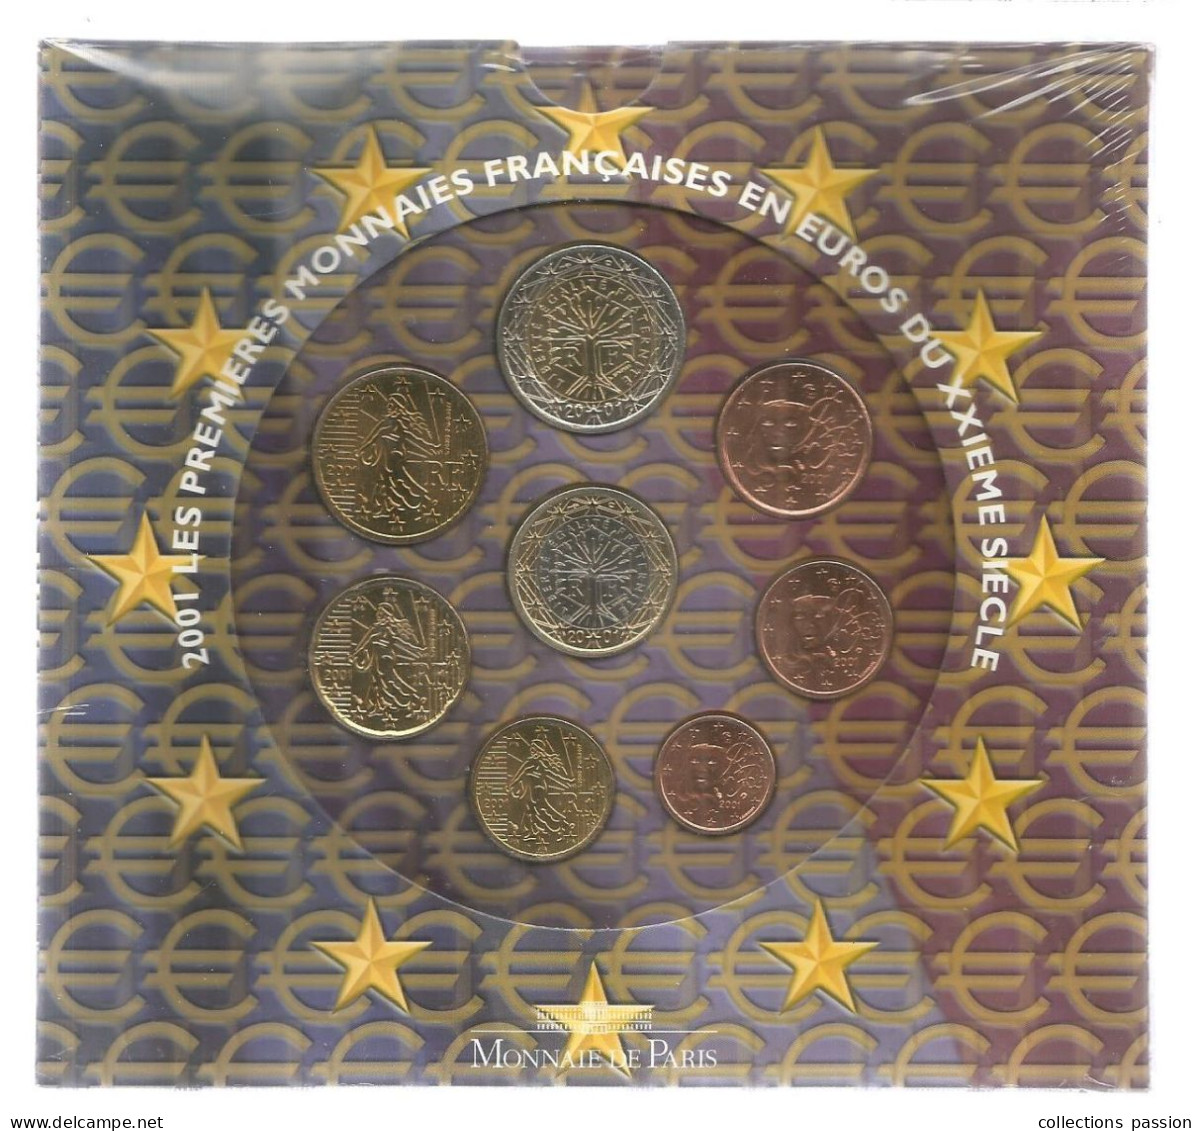 Monnaie, Coffret, Emballage D'origine Scéllé, EURO France, Brillant Universel , Série Officielle, 2001, Frais Fr 3.50 E - France